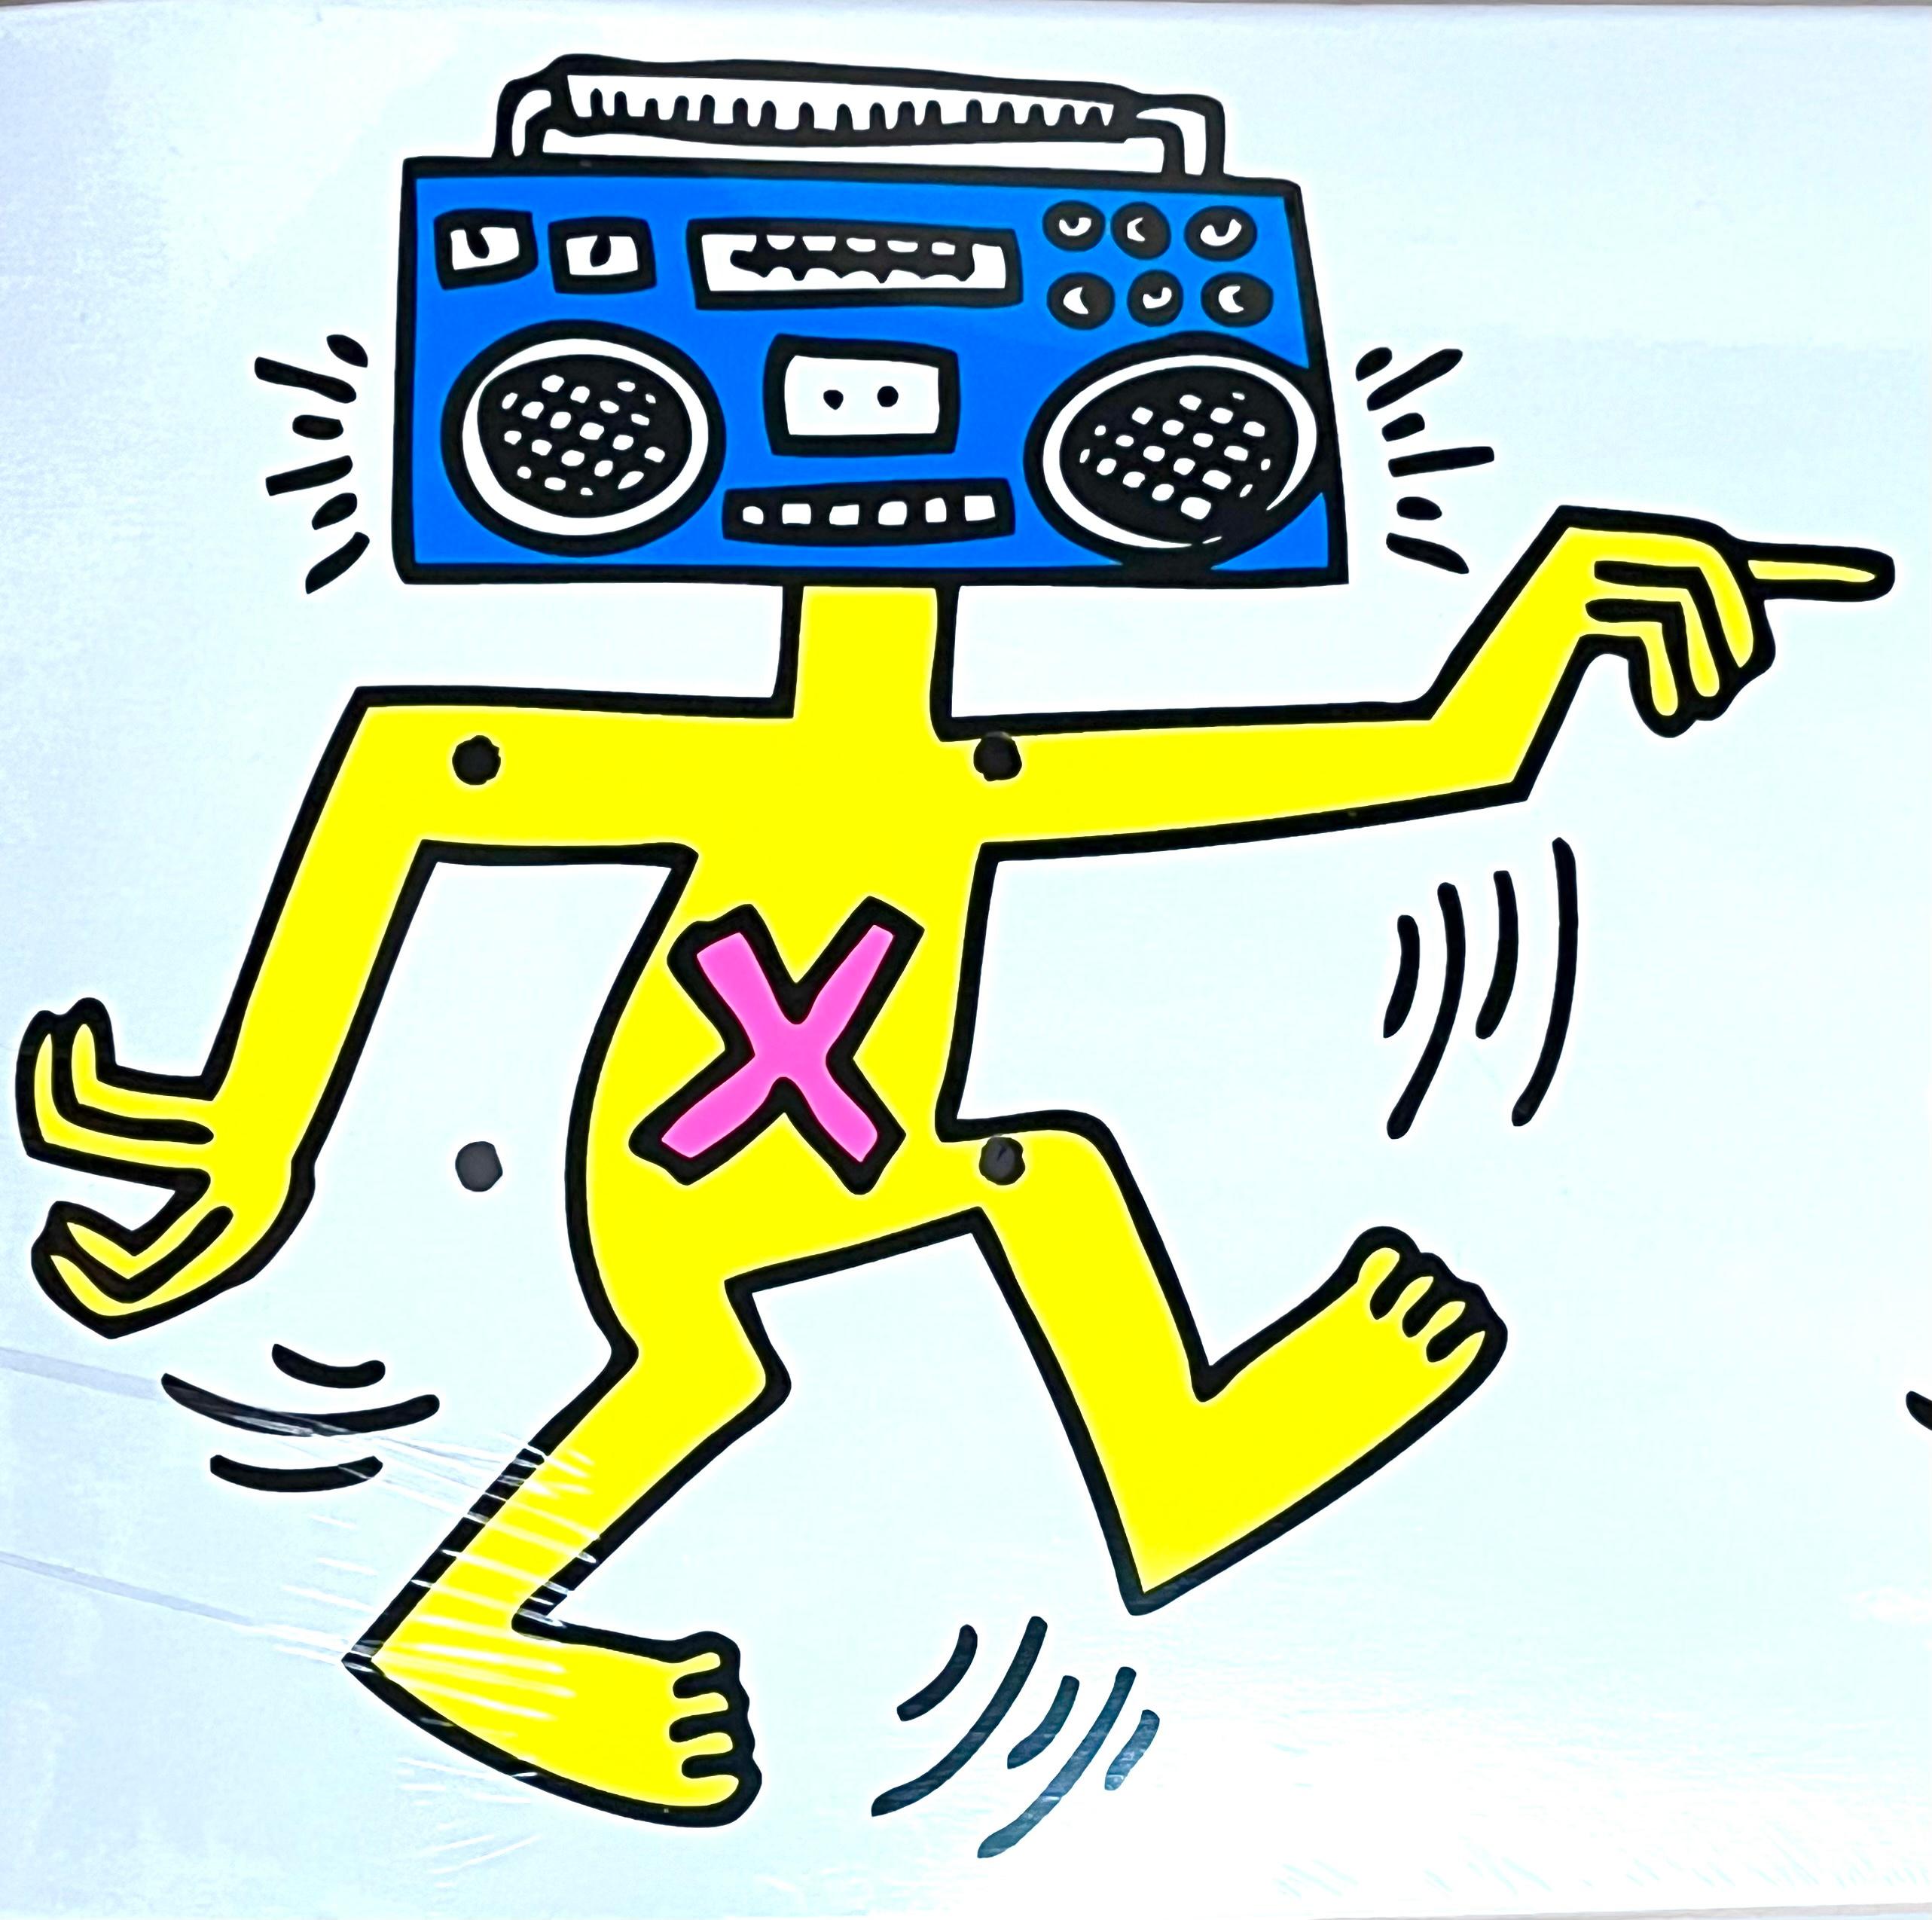 Rare planche de skateboard Keith Haring, épuisée, représentant l'emblématique Boom Box de l'artiste.

Ce skate deck Keith Haring très décoratif est né vers 2012 de la collaboration entre Alien Workshop et la Fondation Keith Haring. Le jeu est